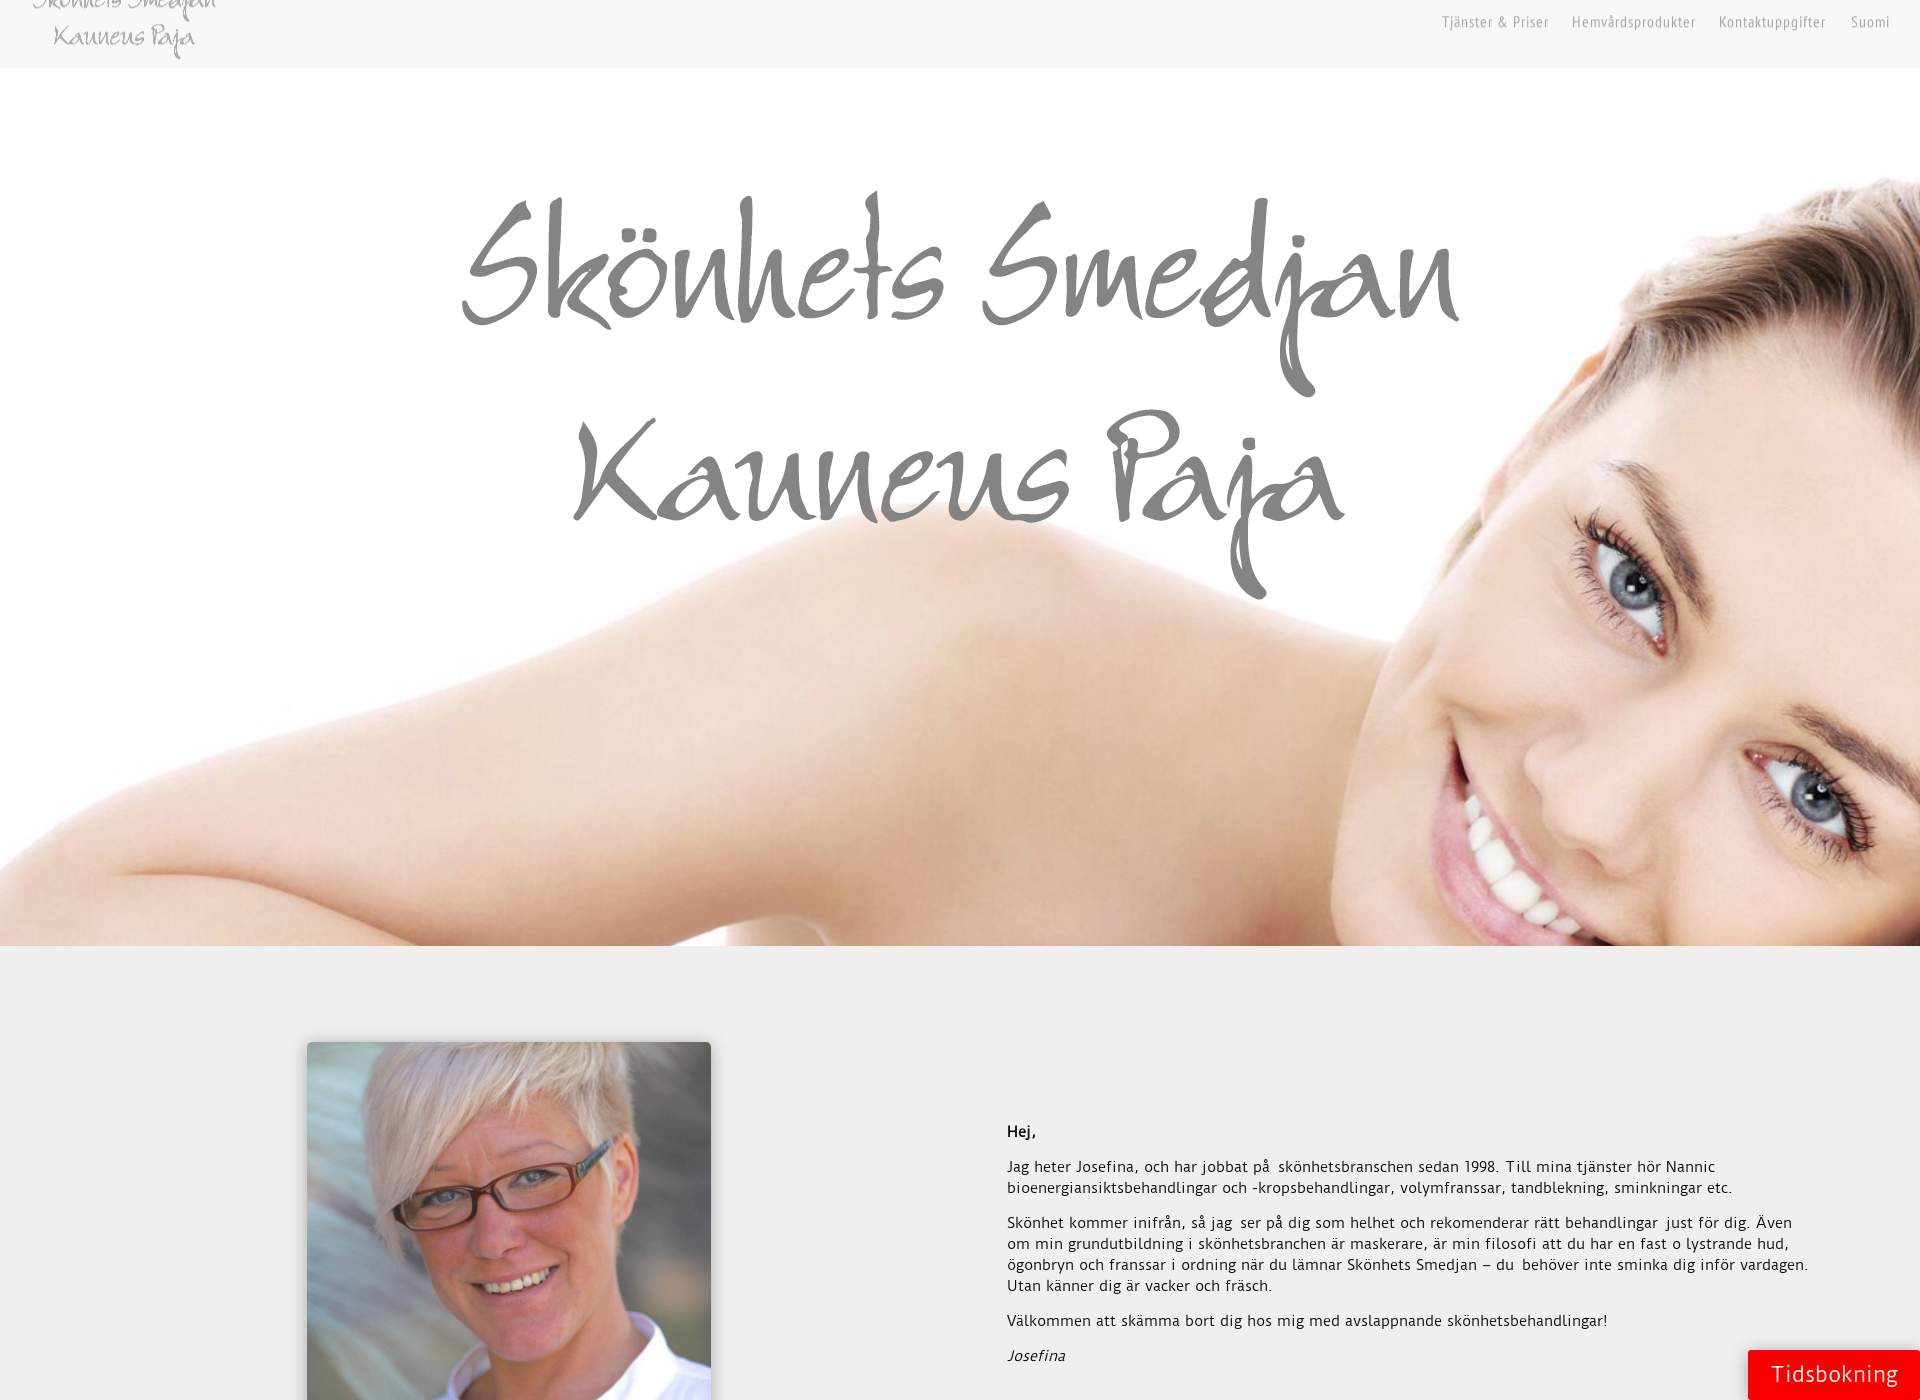 Screenshot for kauneuspaja.fi